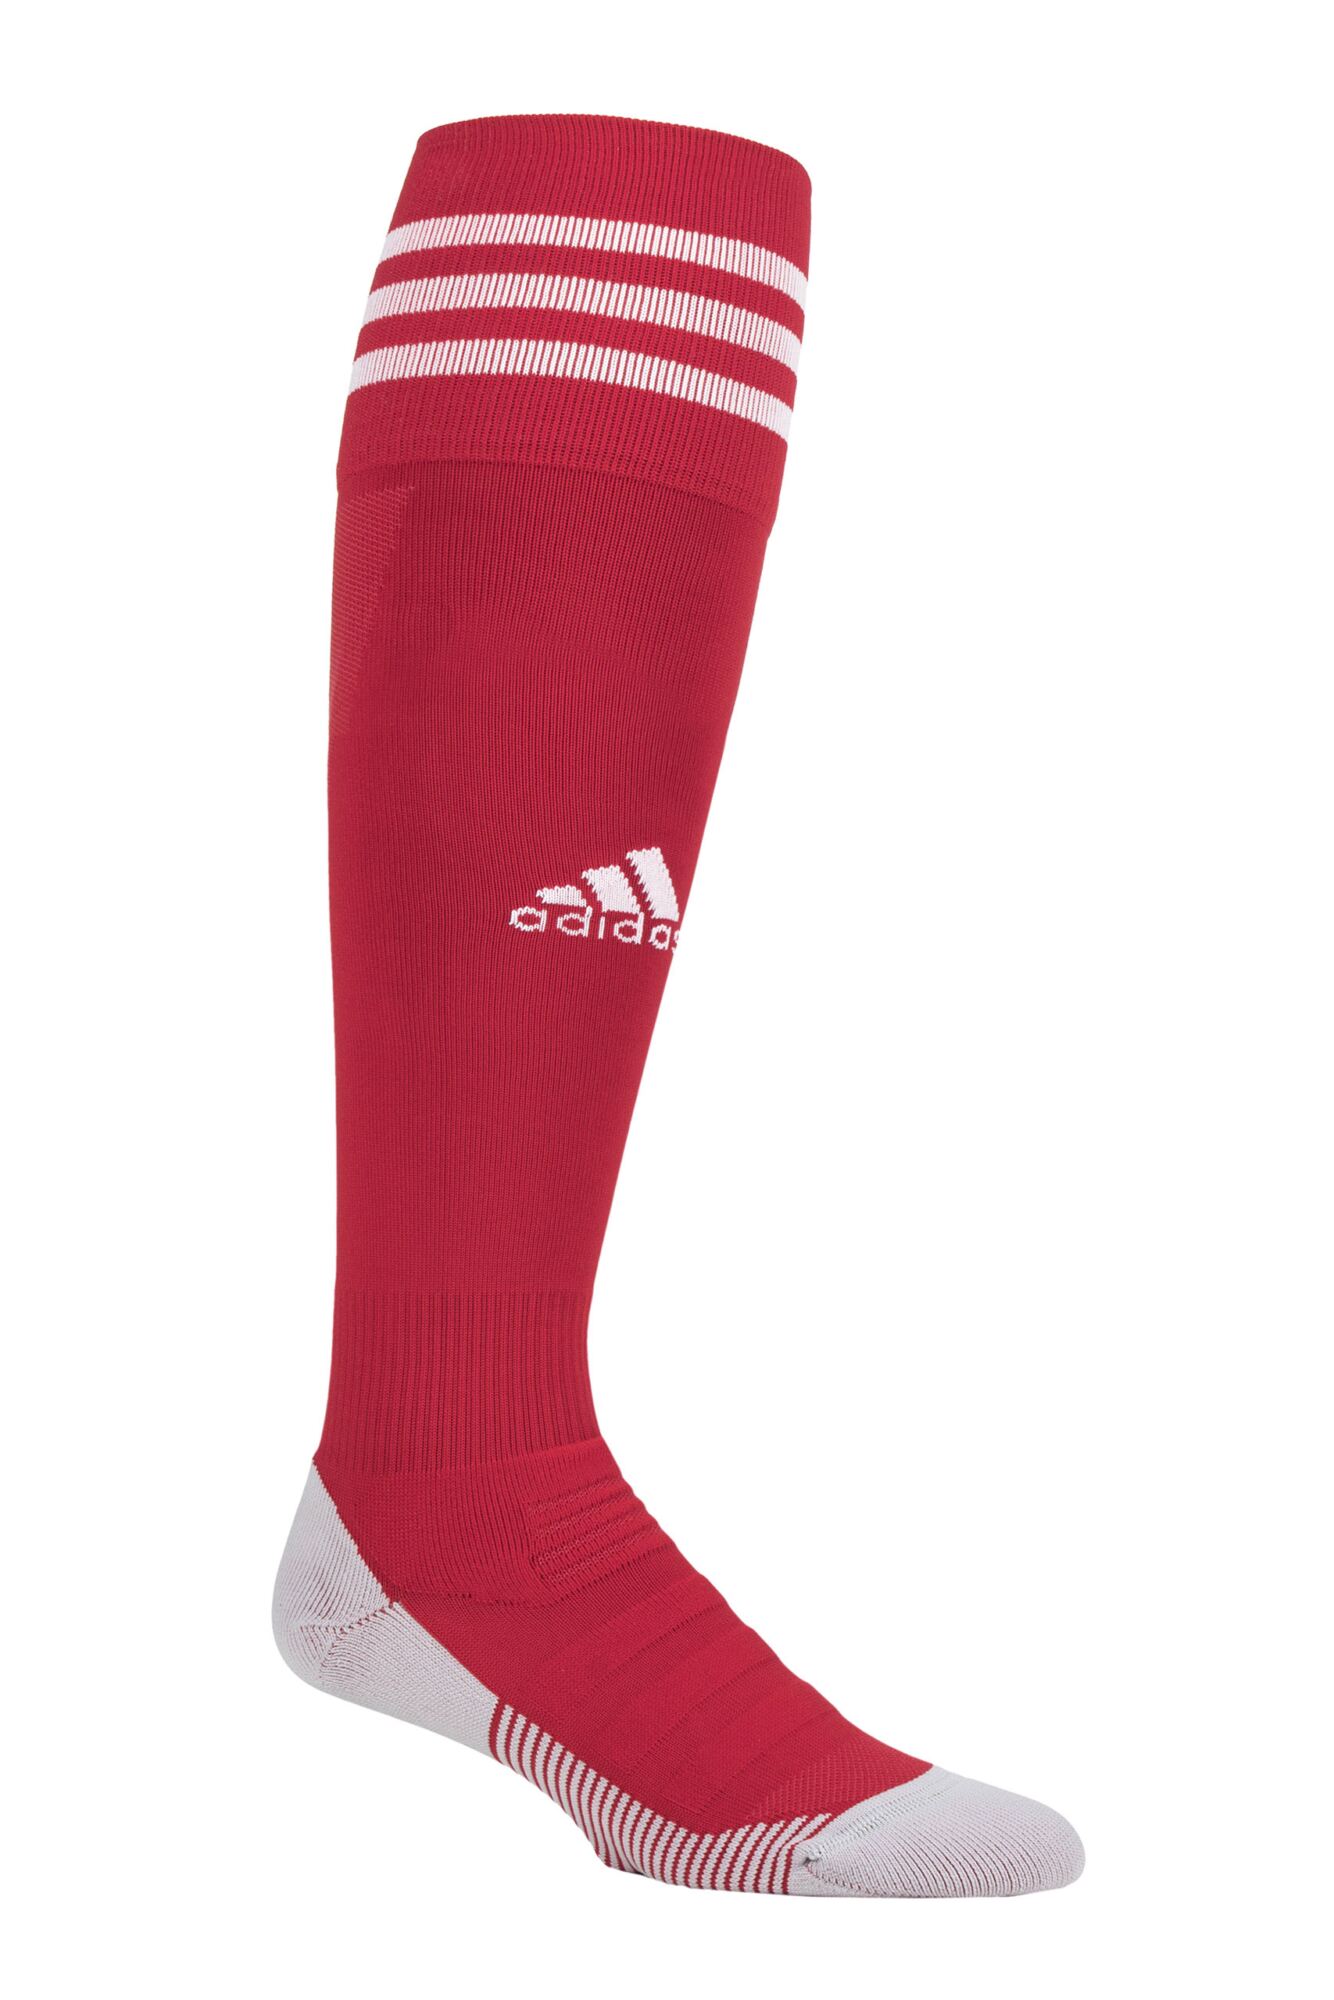 Adidas Football Socks Red White Stripes